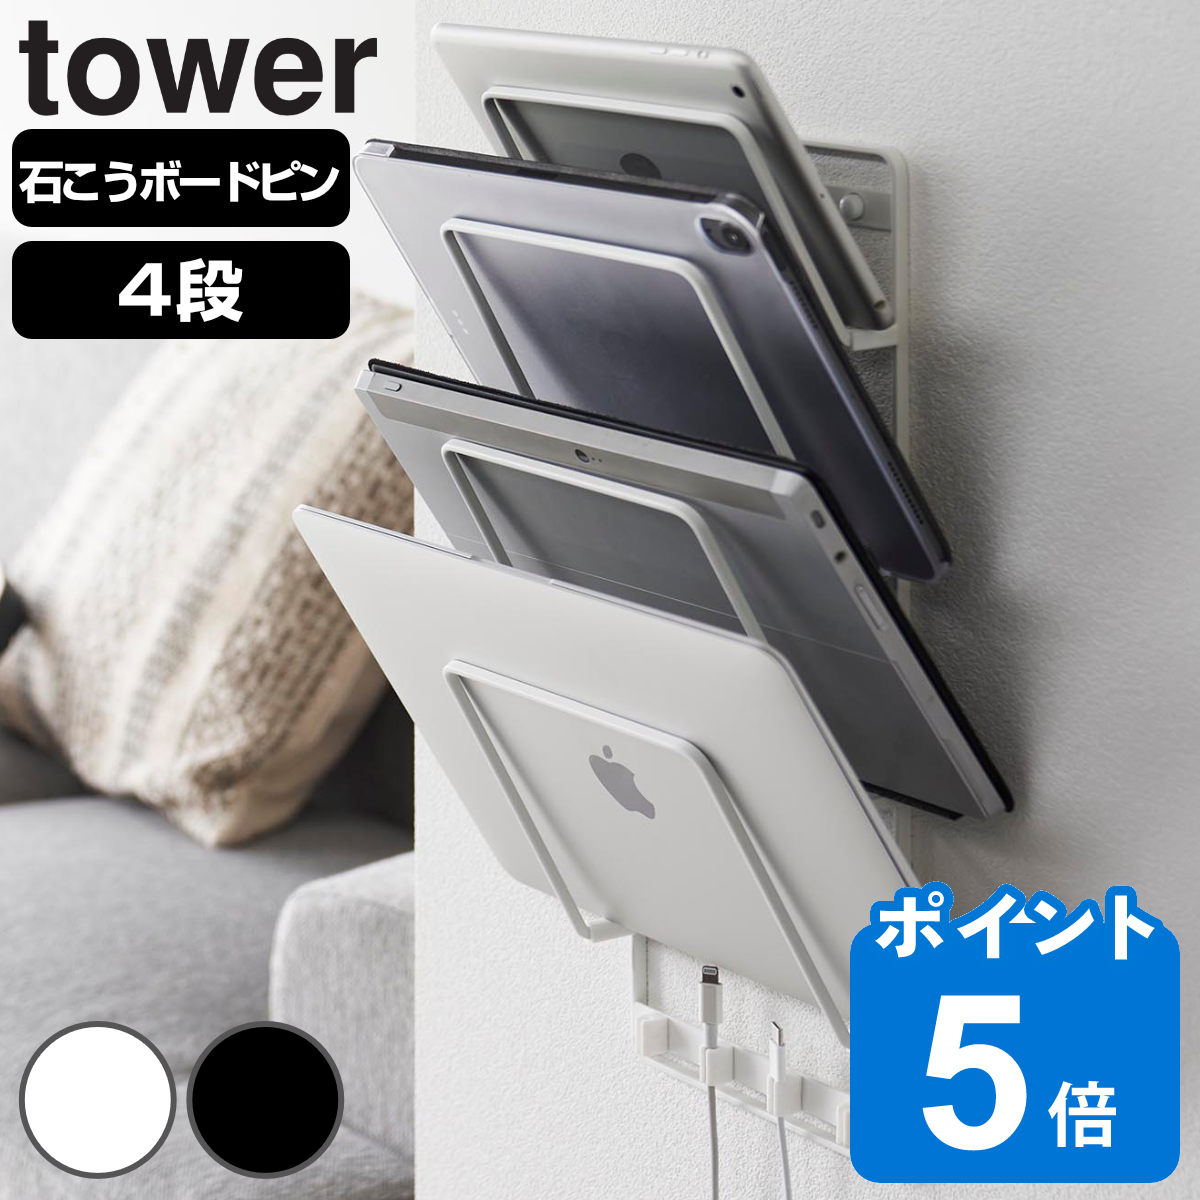 山崎実業 tower 石こうボード壁対応ウォールタブレットホルダー タワー ４段